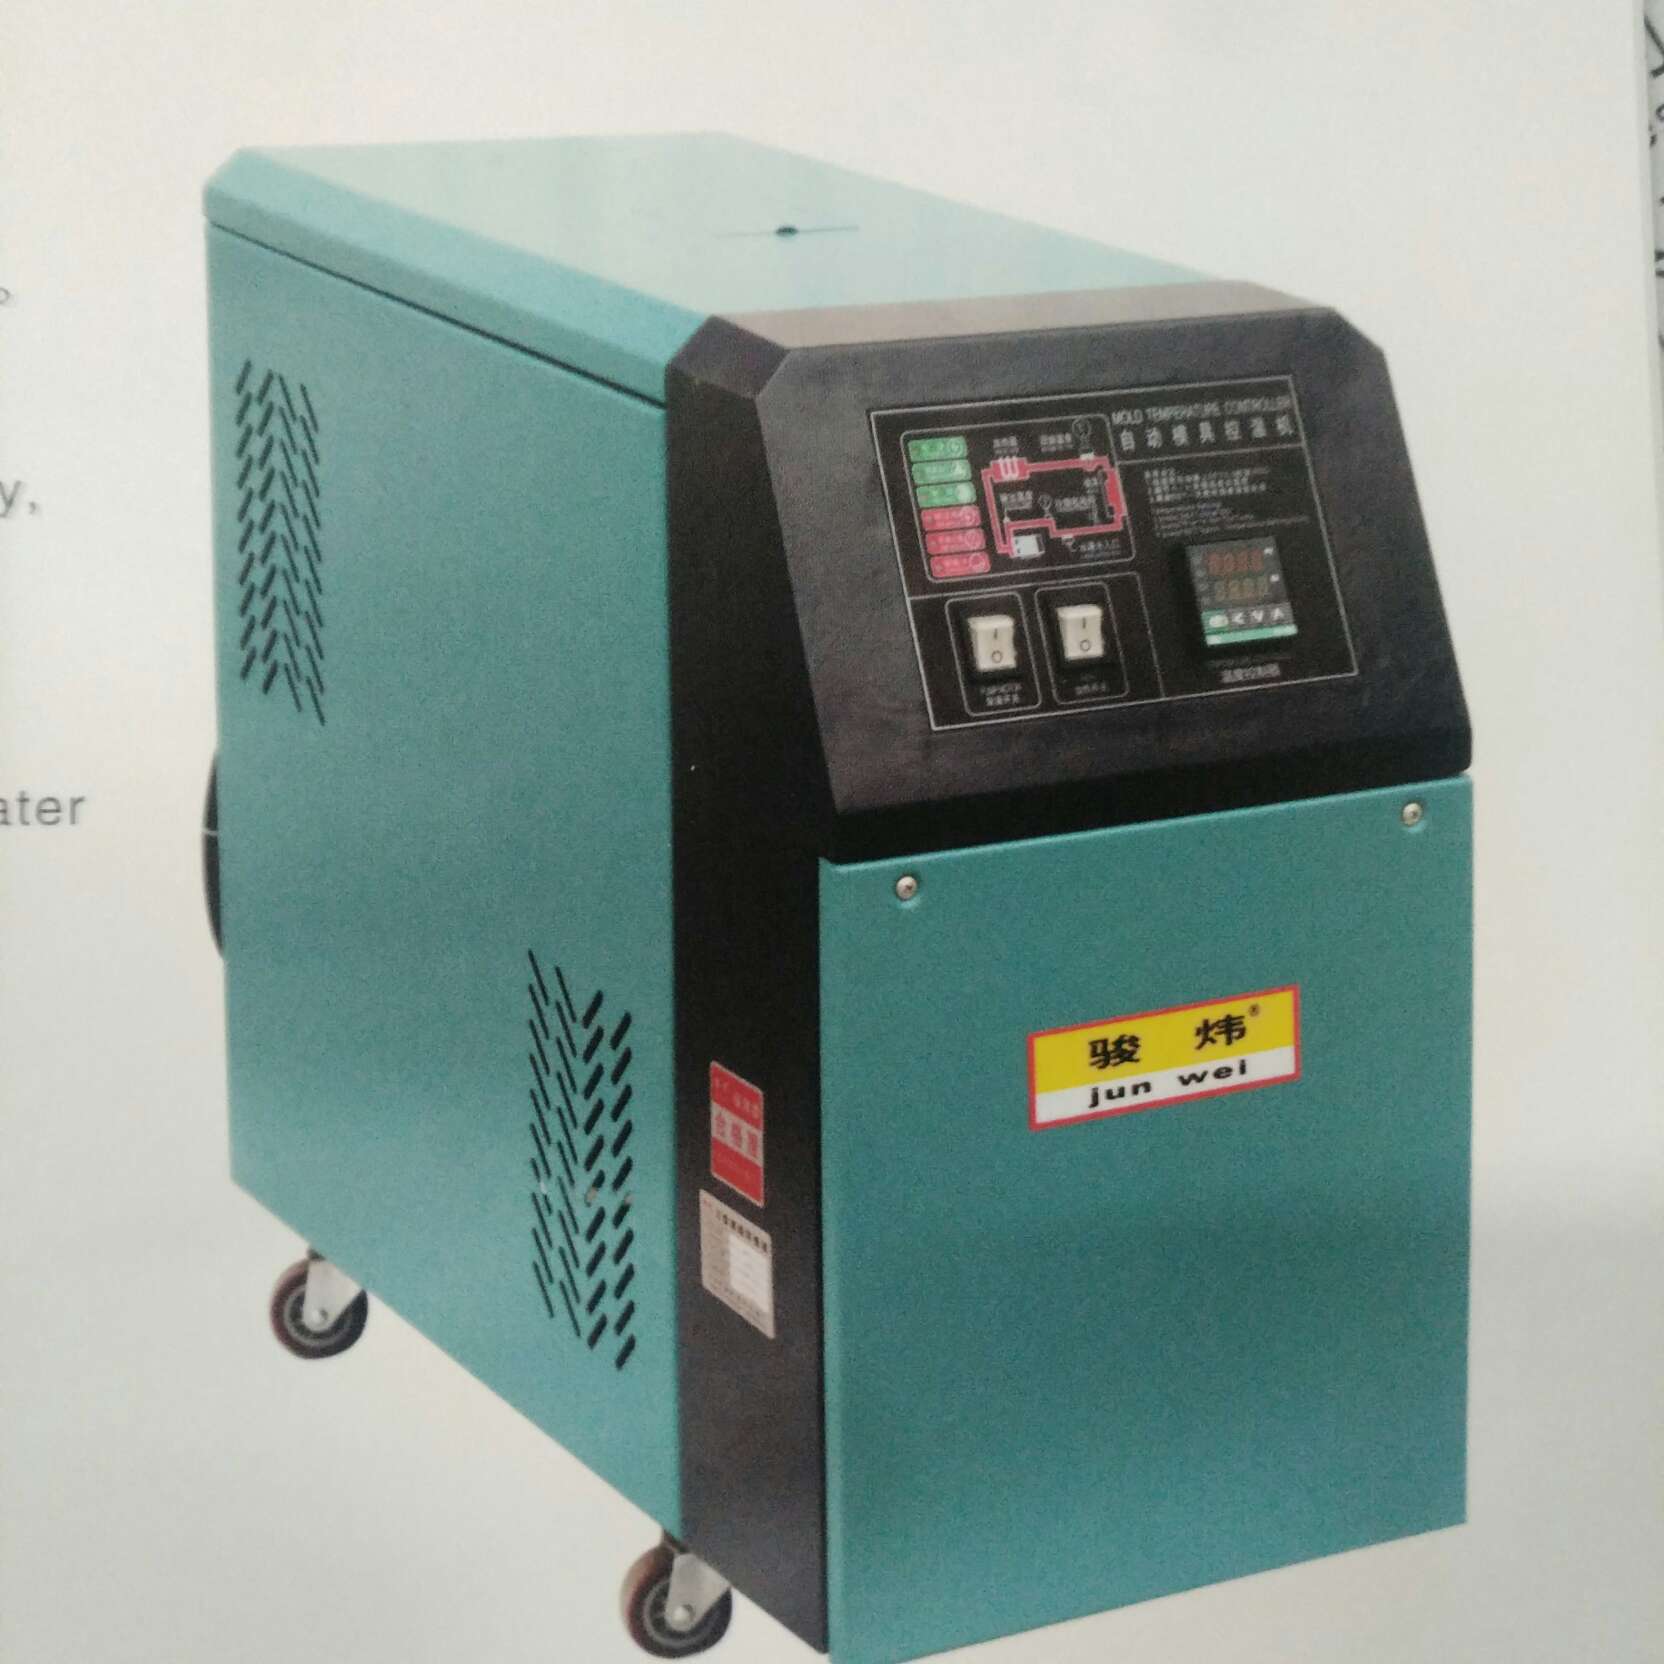 (价格到店面议)塑料机械周边辅机系列 油式模温机